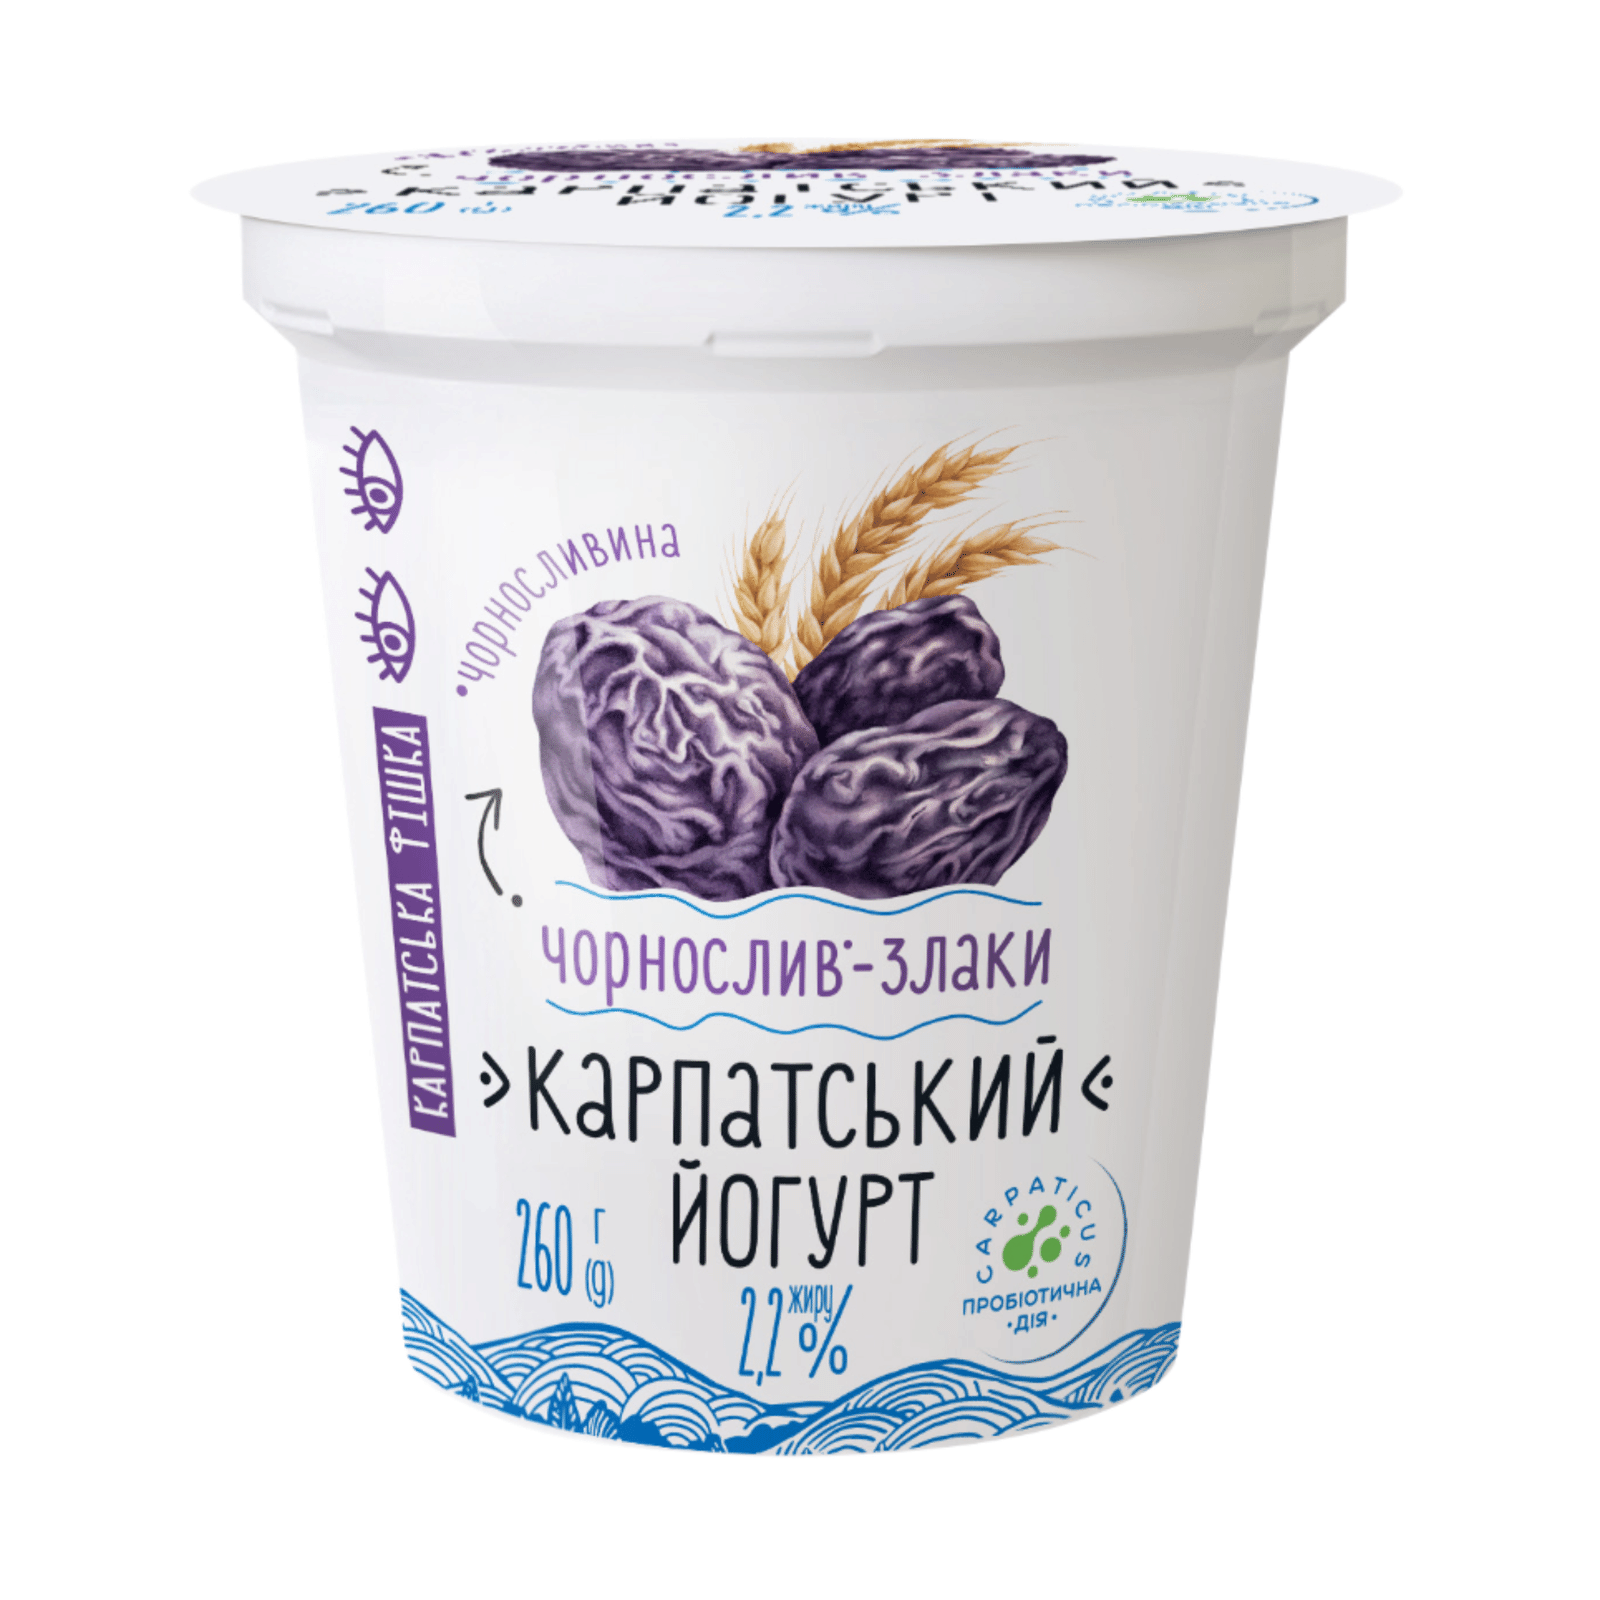 Йогурт «Галичина» чорнослив-злаки 2,2%, стакан - 1